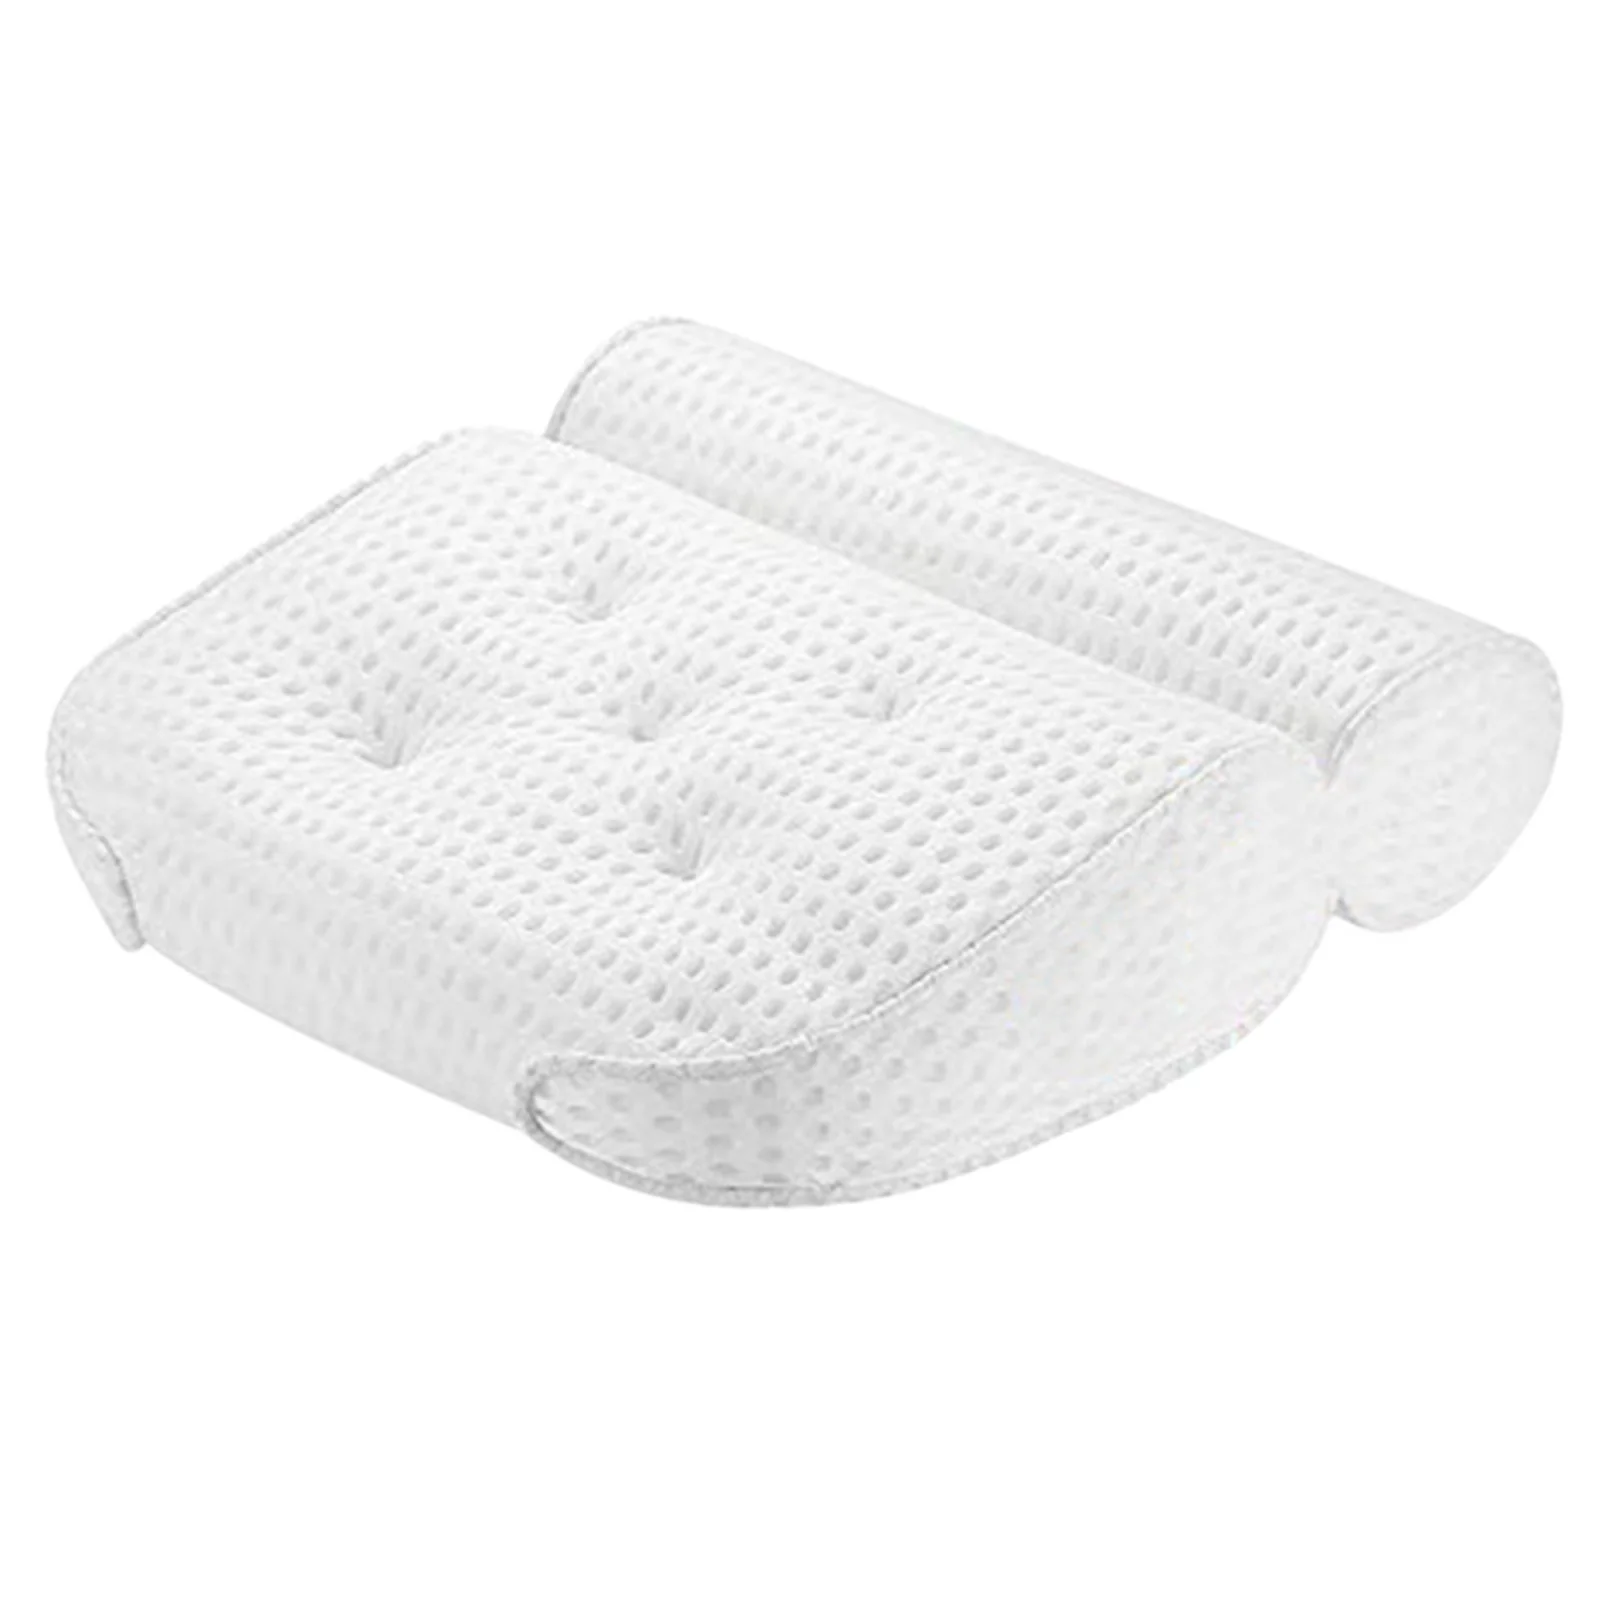 

Подушка для ванны, домашняя спа-подушка для женщин и мужчин с дышащей воздушной сеткой 4D, помогает поддерживать голову, шею и спину DNJ99